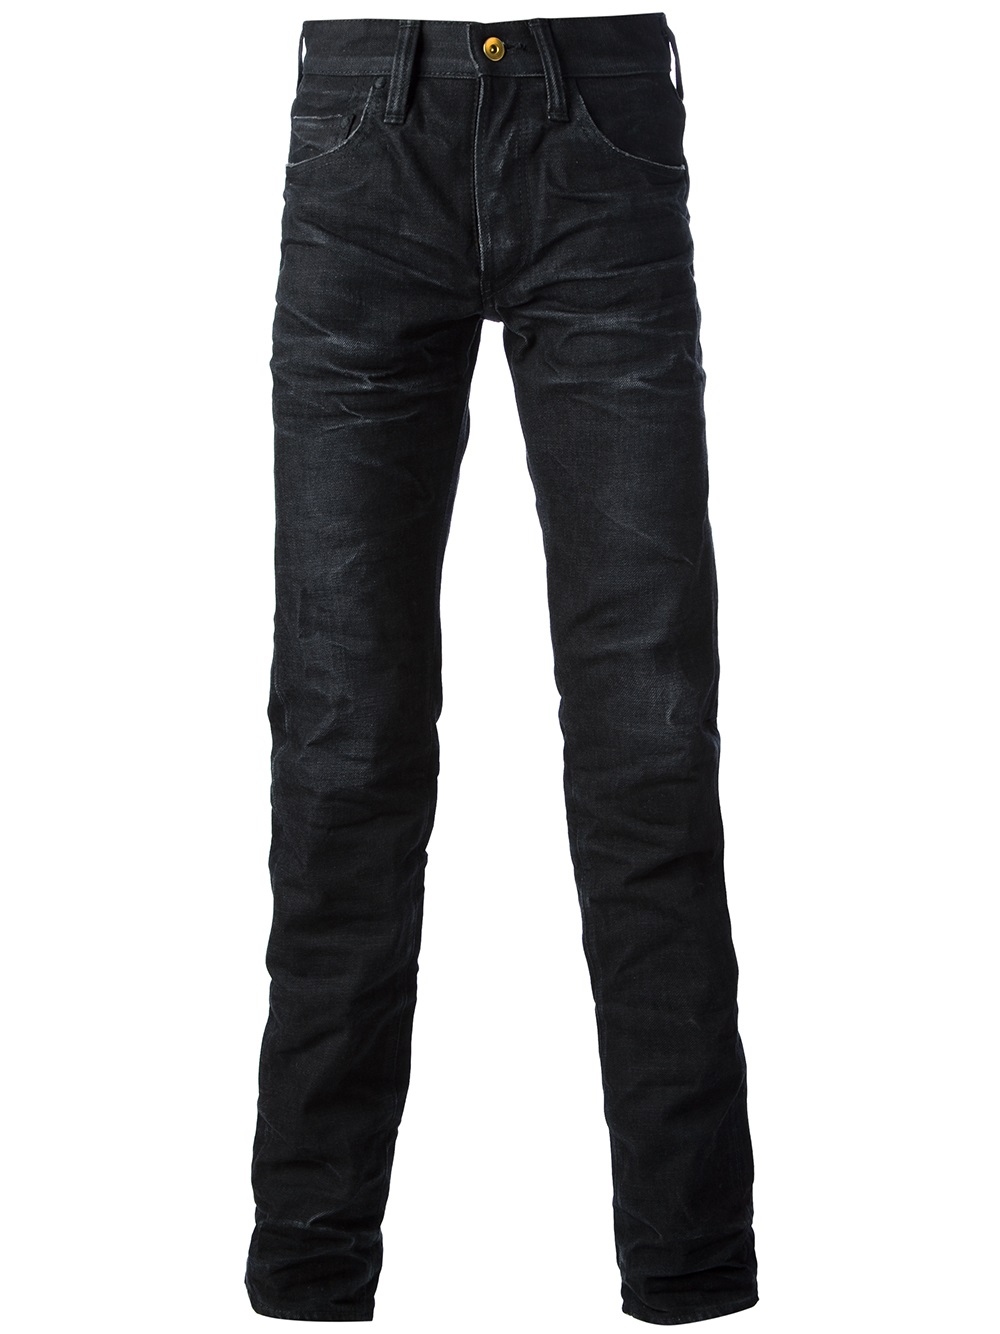 Lyst - PRPS Noir Straight Leg Jeans in Black for Men